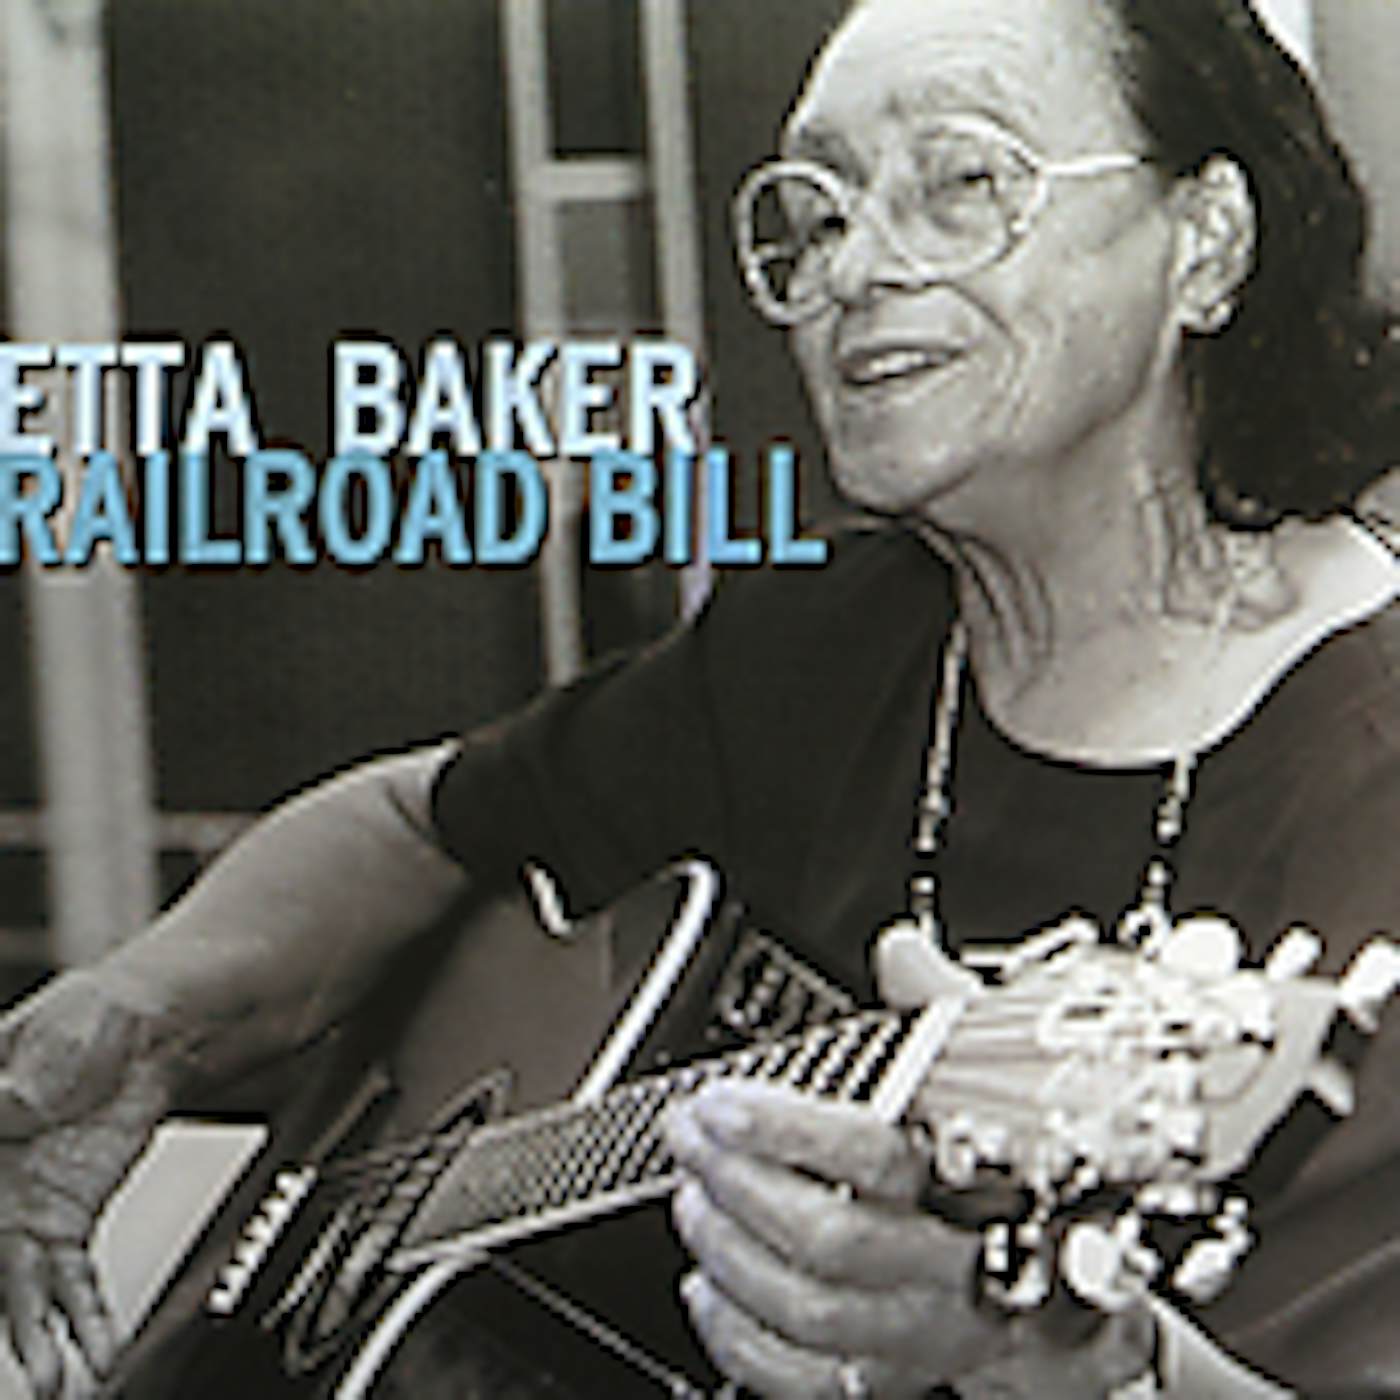 Etta Baker RAILROAD BILL CD